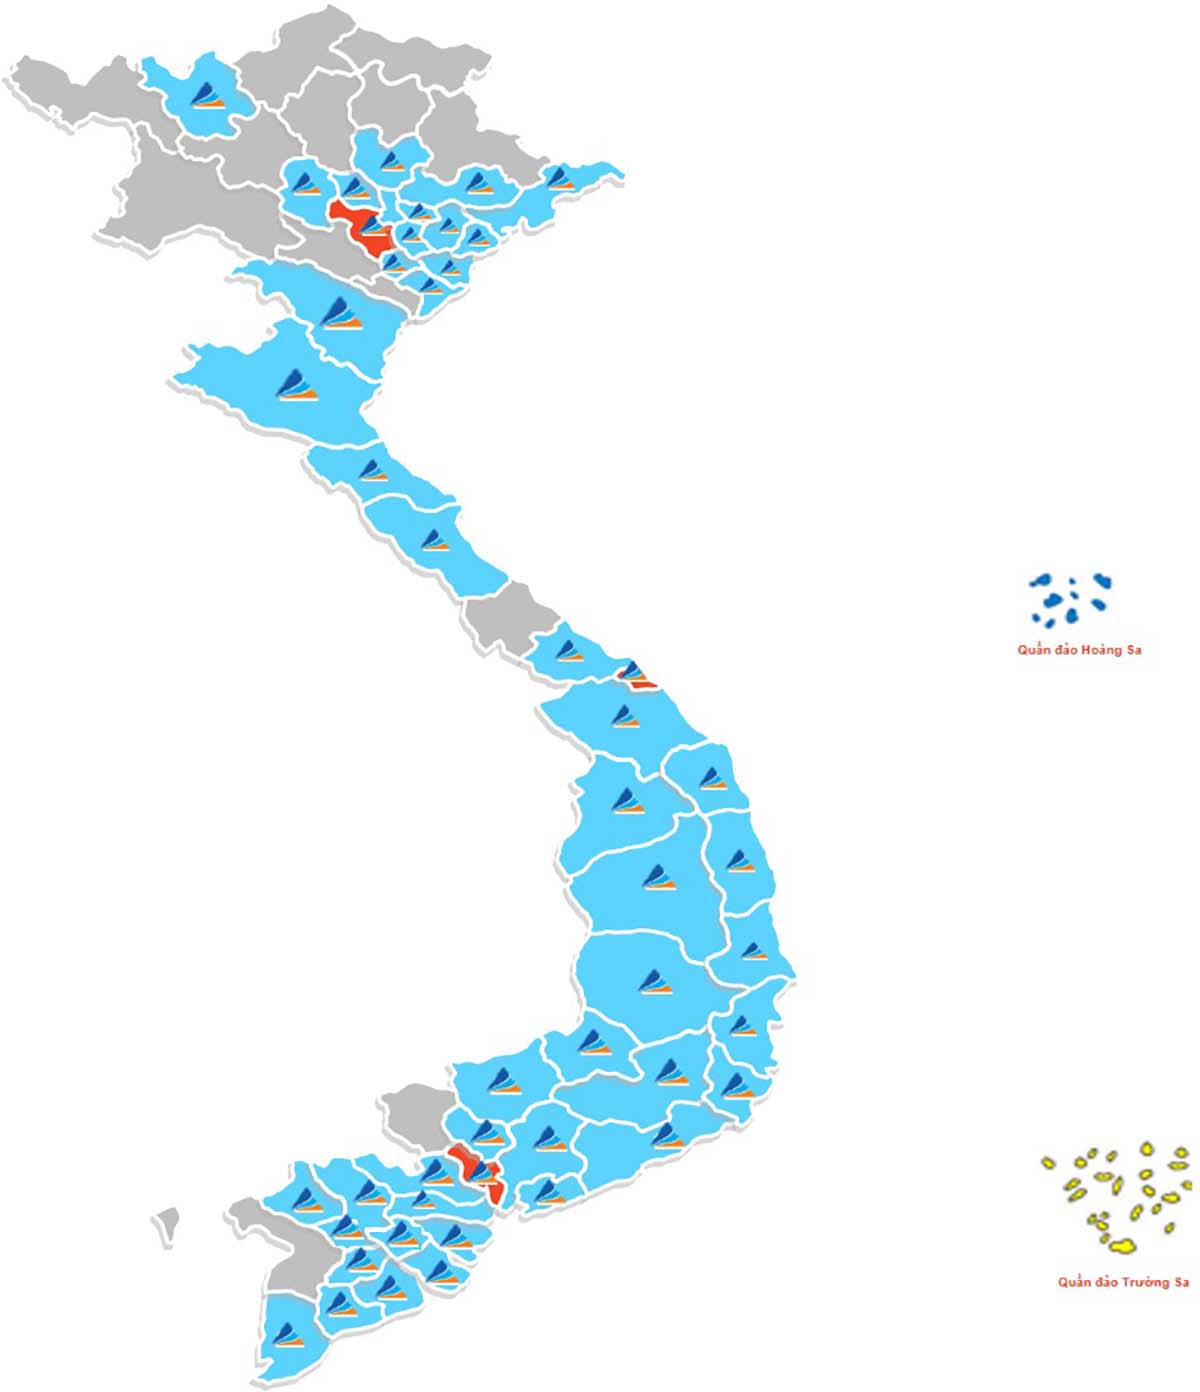 Hệ thống dịch vụ phân phối BĐS của Đất Xanh Services phủ 49/63 tỉnh thành trên toàn quốc (Số liệu: Tập đoàn Đất Xanh 2020)